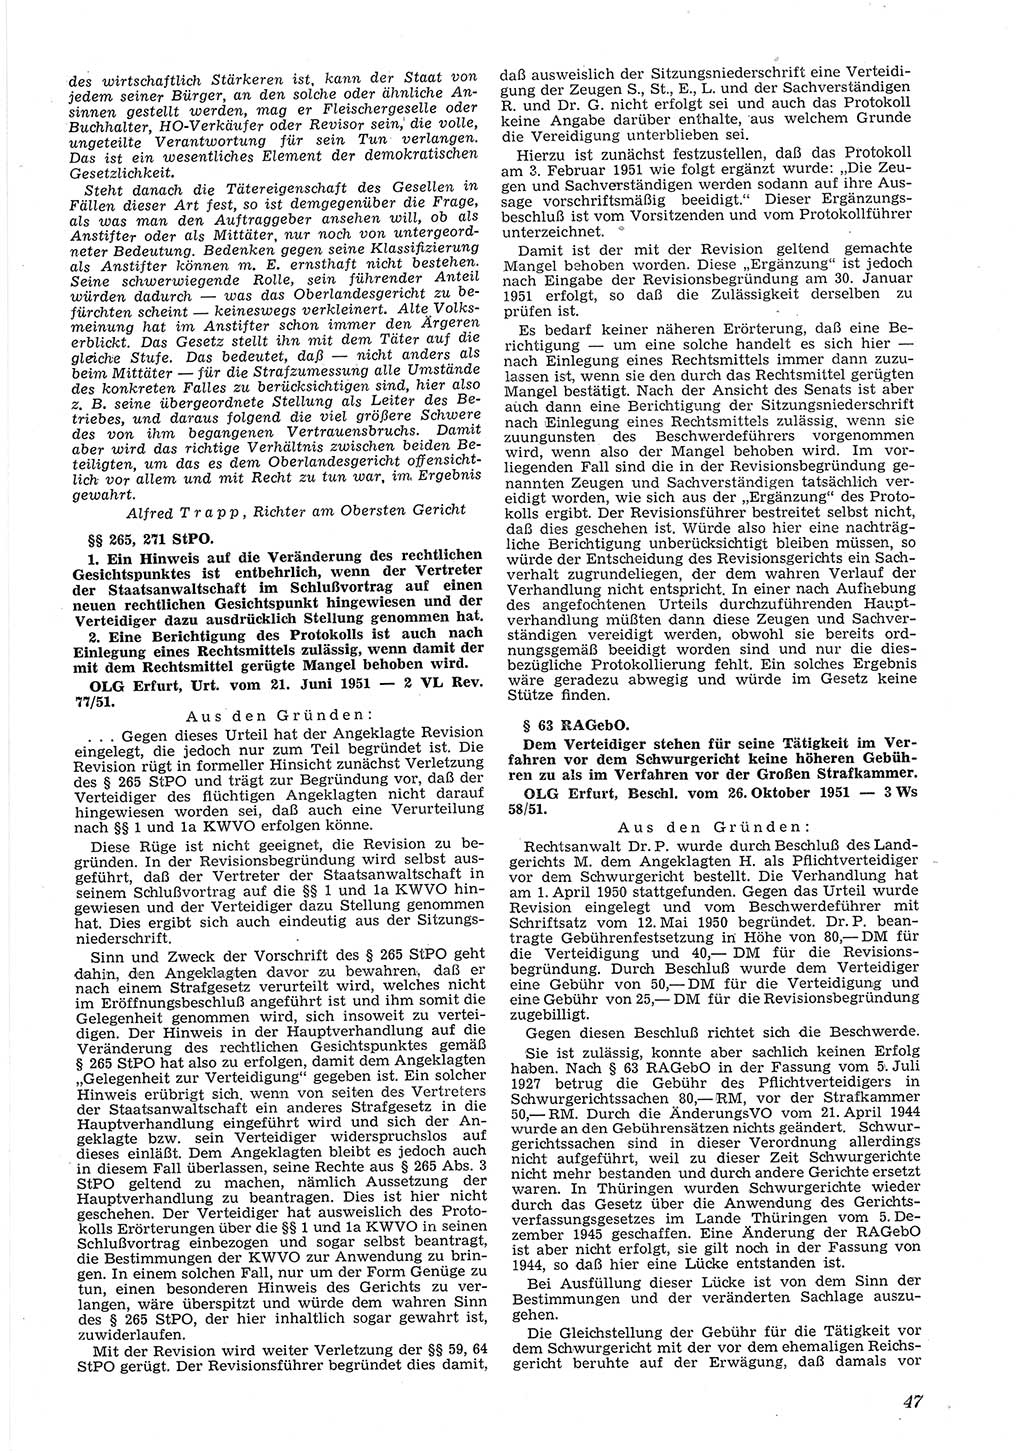 Neue Justiz (NJ), Zeitschrift für Recht und Rechtswissenschaft [Deutsche Demokratische Republik (DDR)], 6. Jahrgang 1952, Seite 47 (NJ DDR 1952, S. 47)